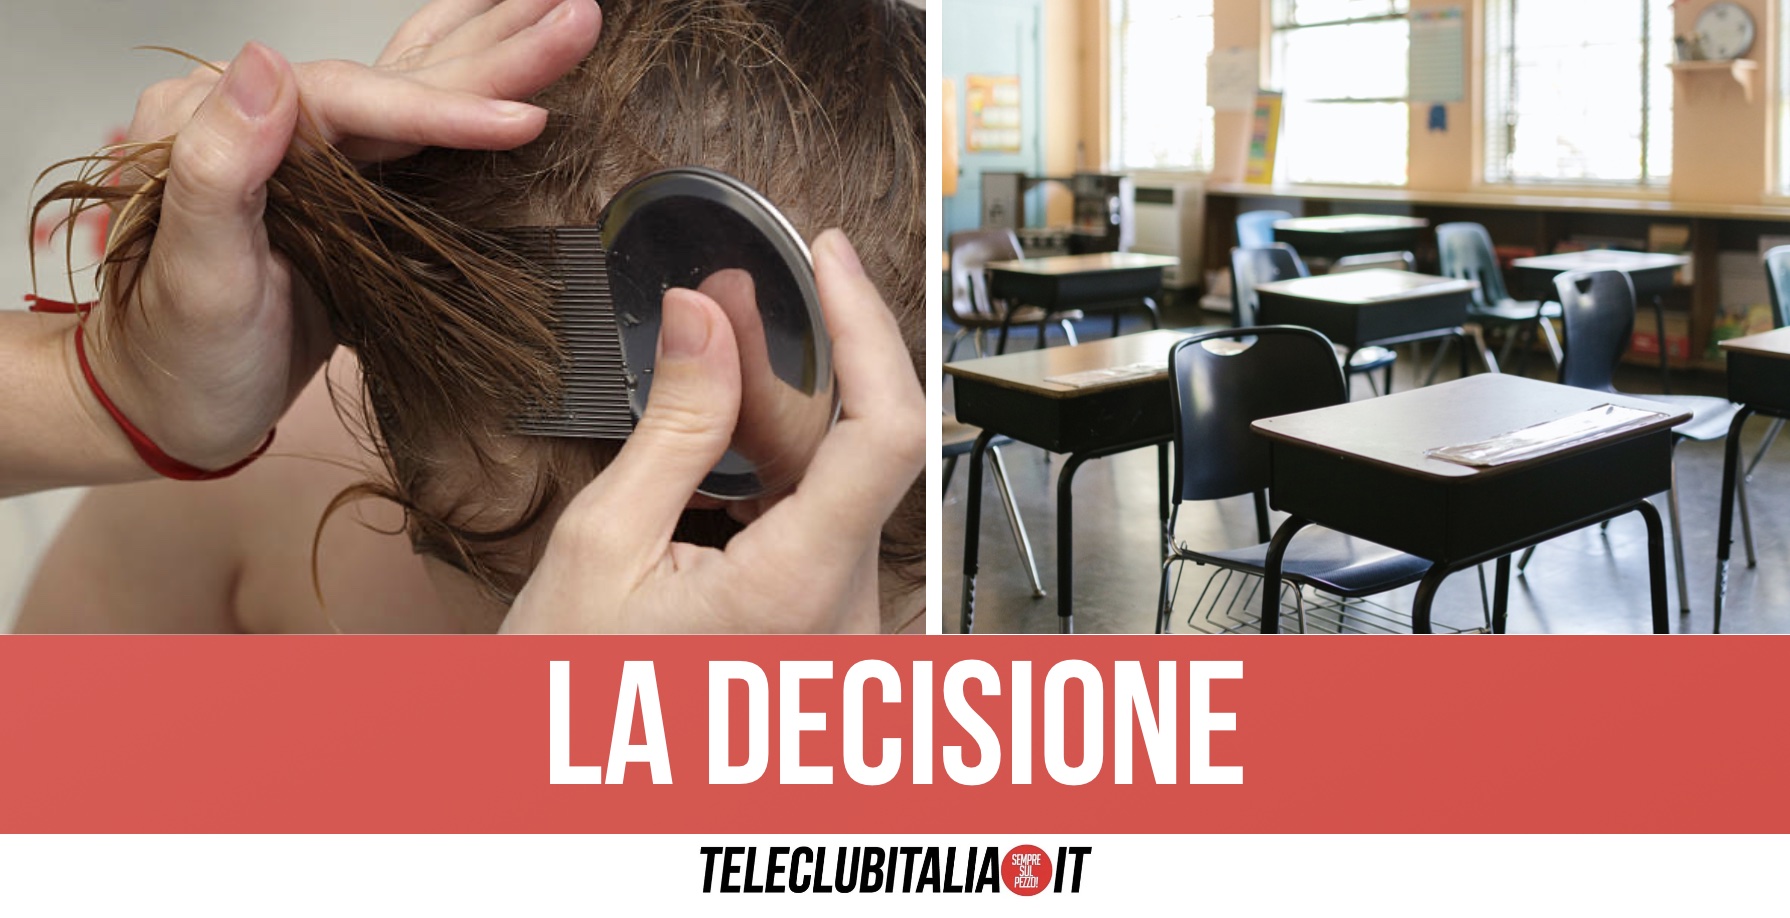 Cesa, scoppia caso di pidocchi tra studenti: sindaco chiude tutte le scuole